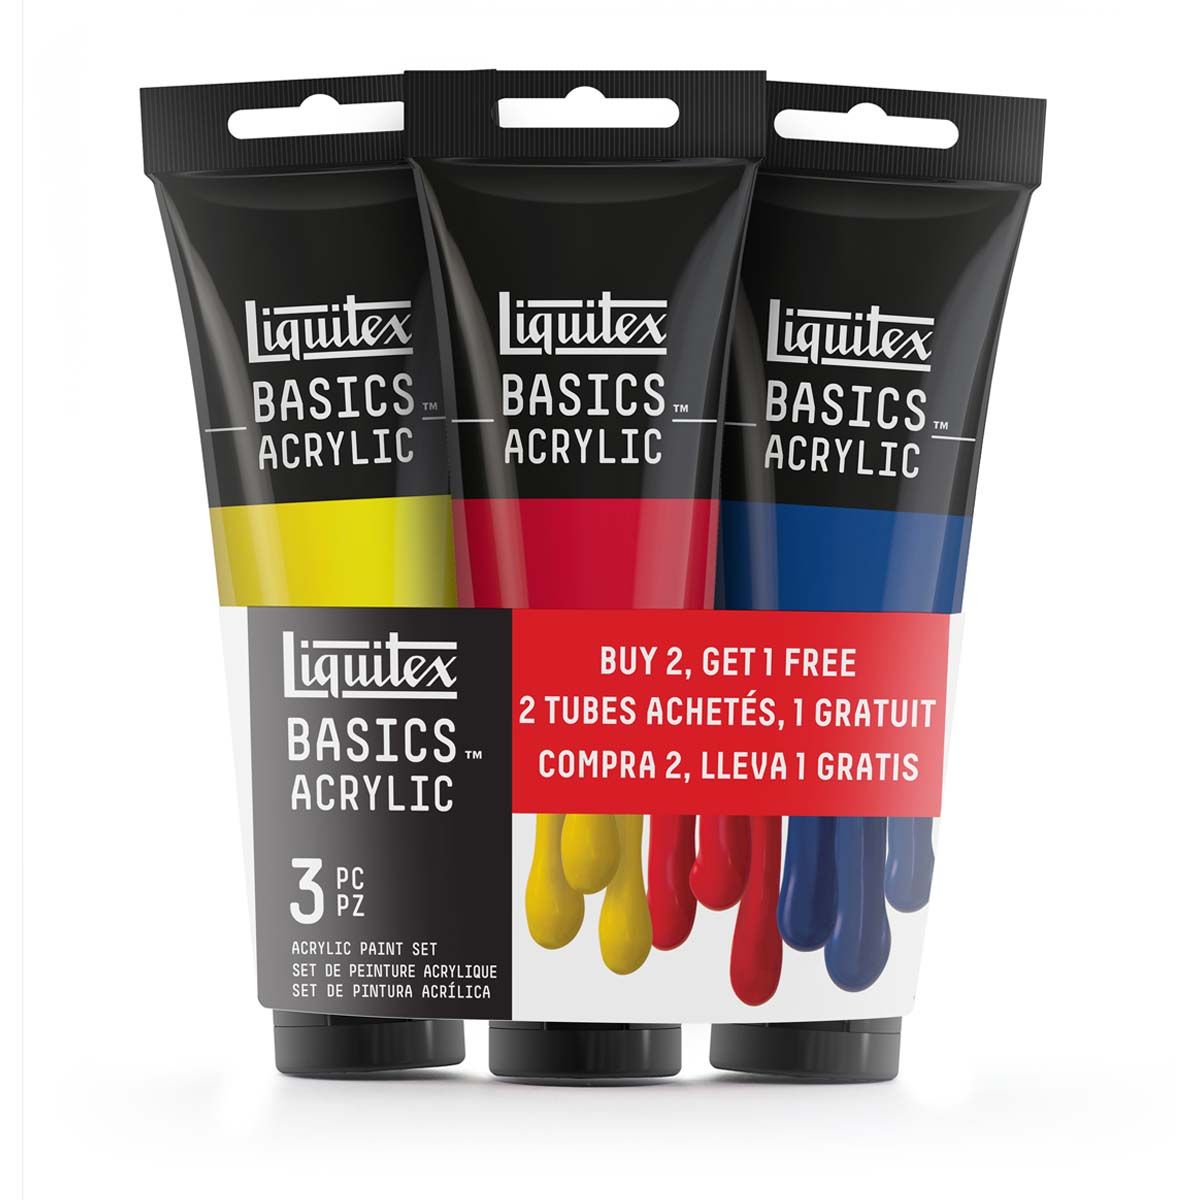 Liquitex Basics Acrylics Best Selling Set